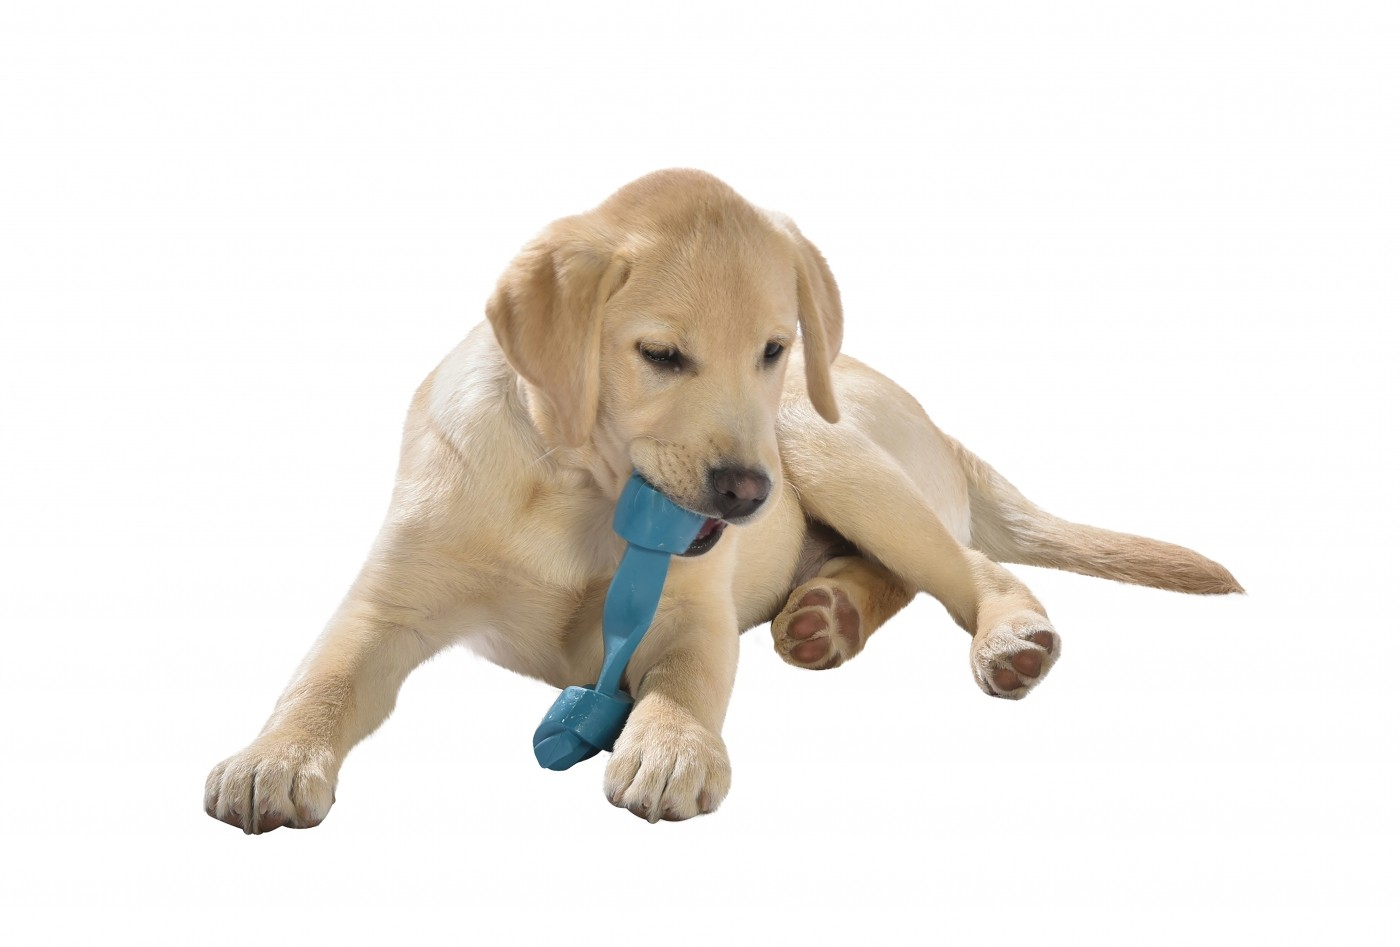 Brinquedo para cães Rope BOBBY feito de borracha natural - para todos os cães